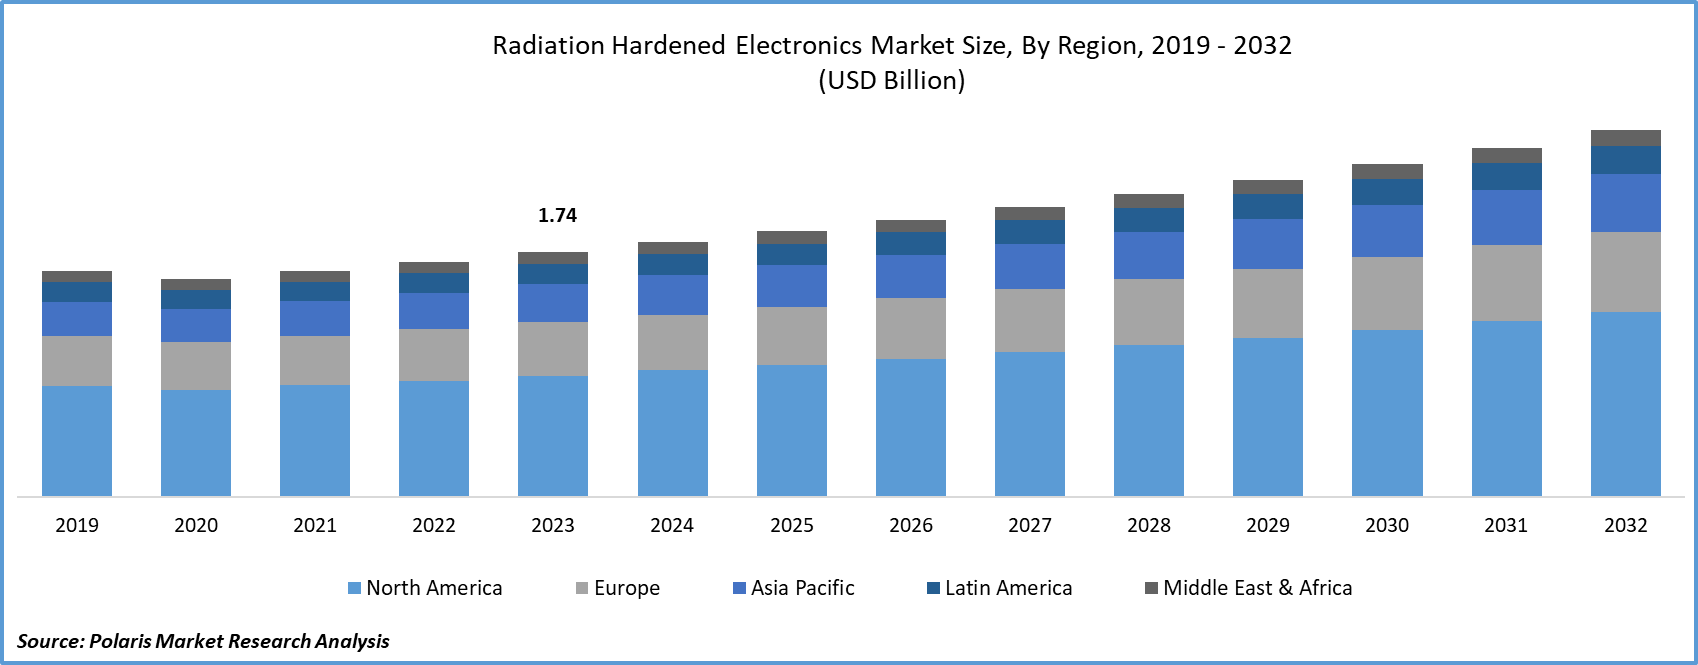 Radiation Hardened Electronics Market Size